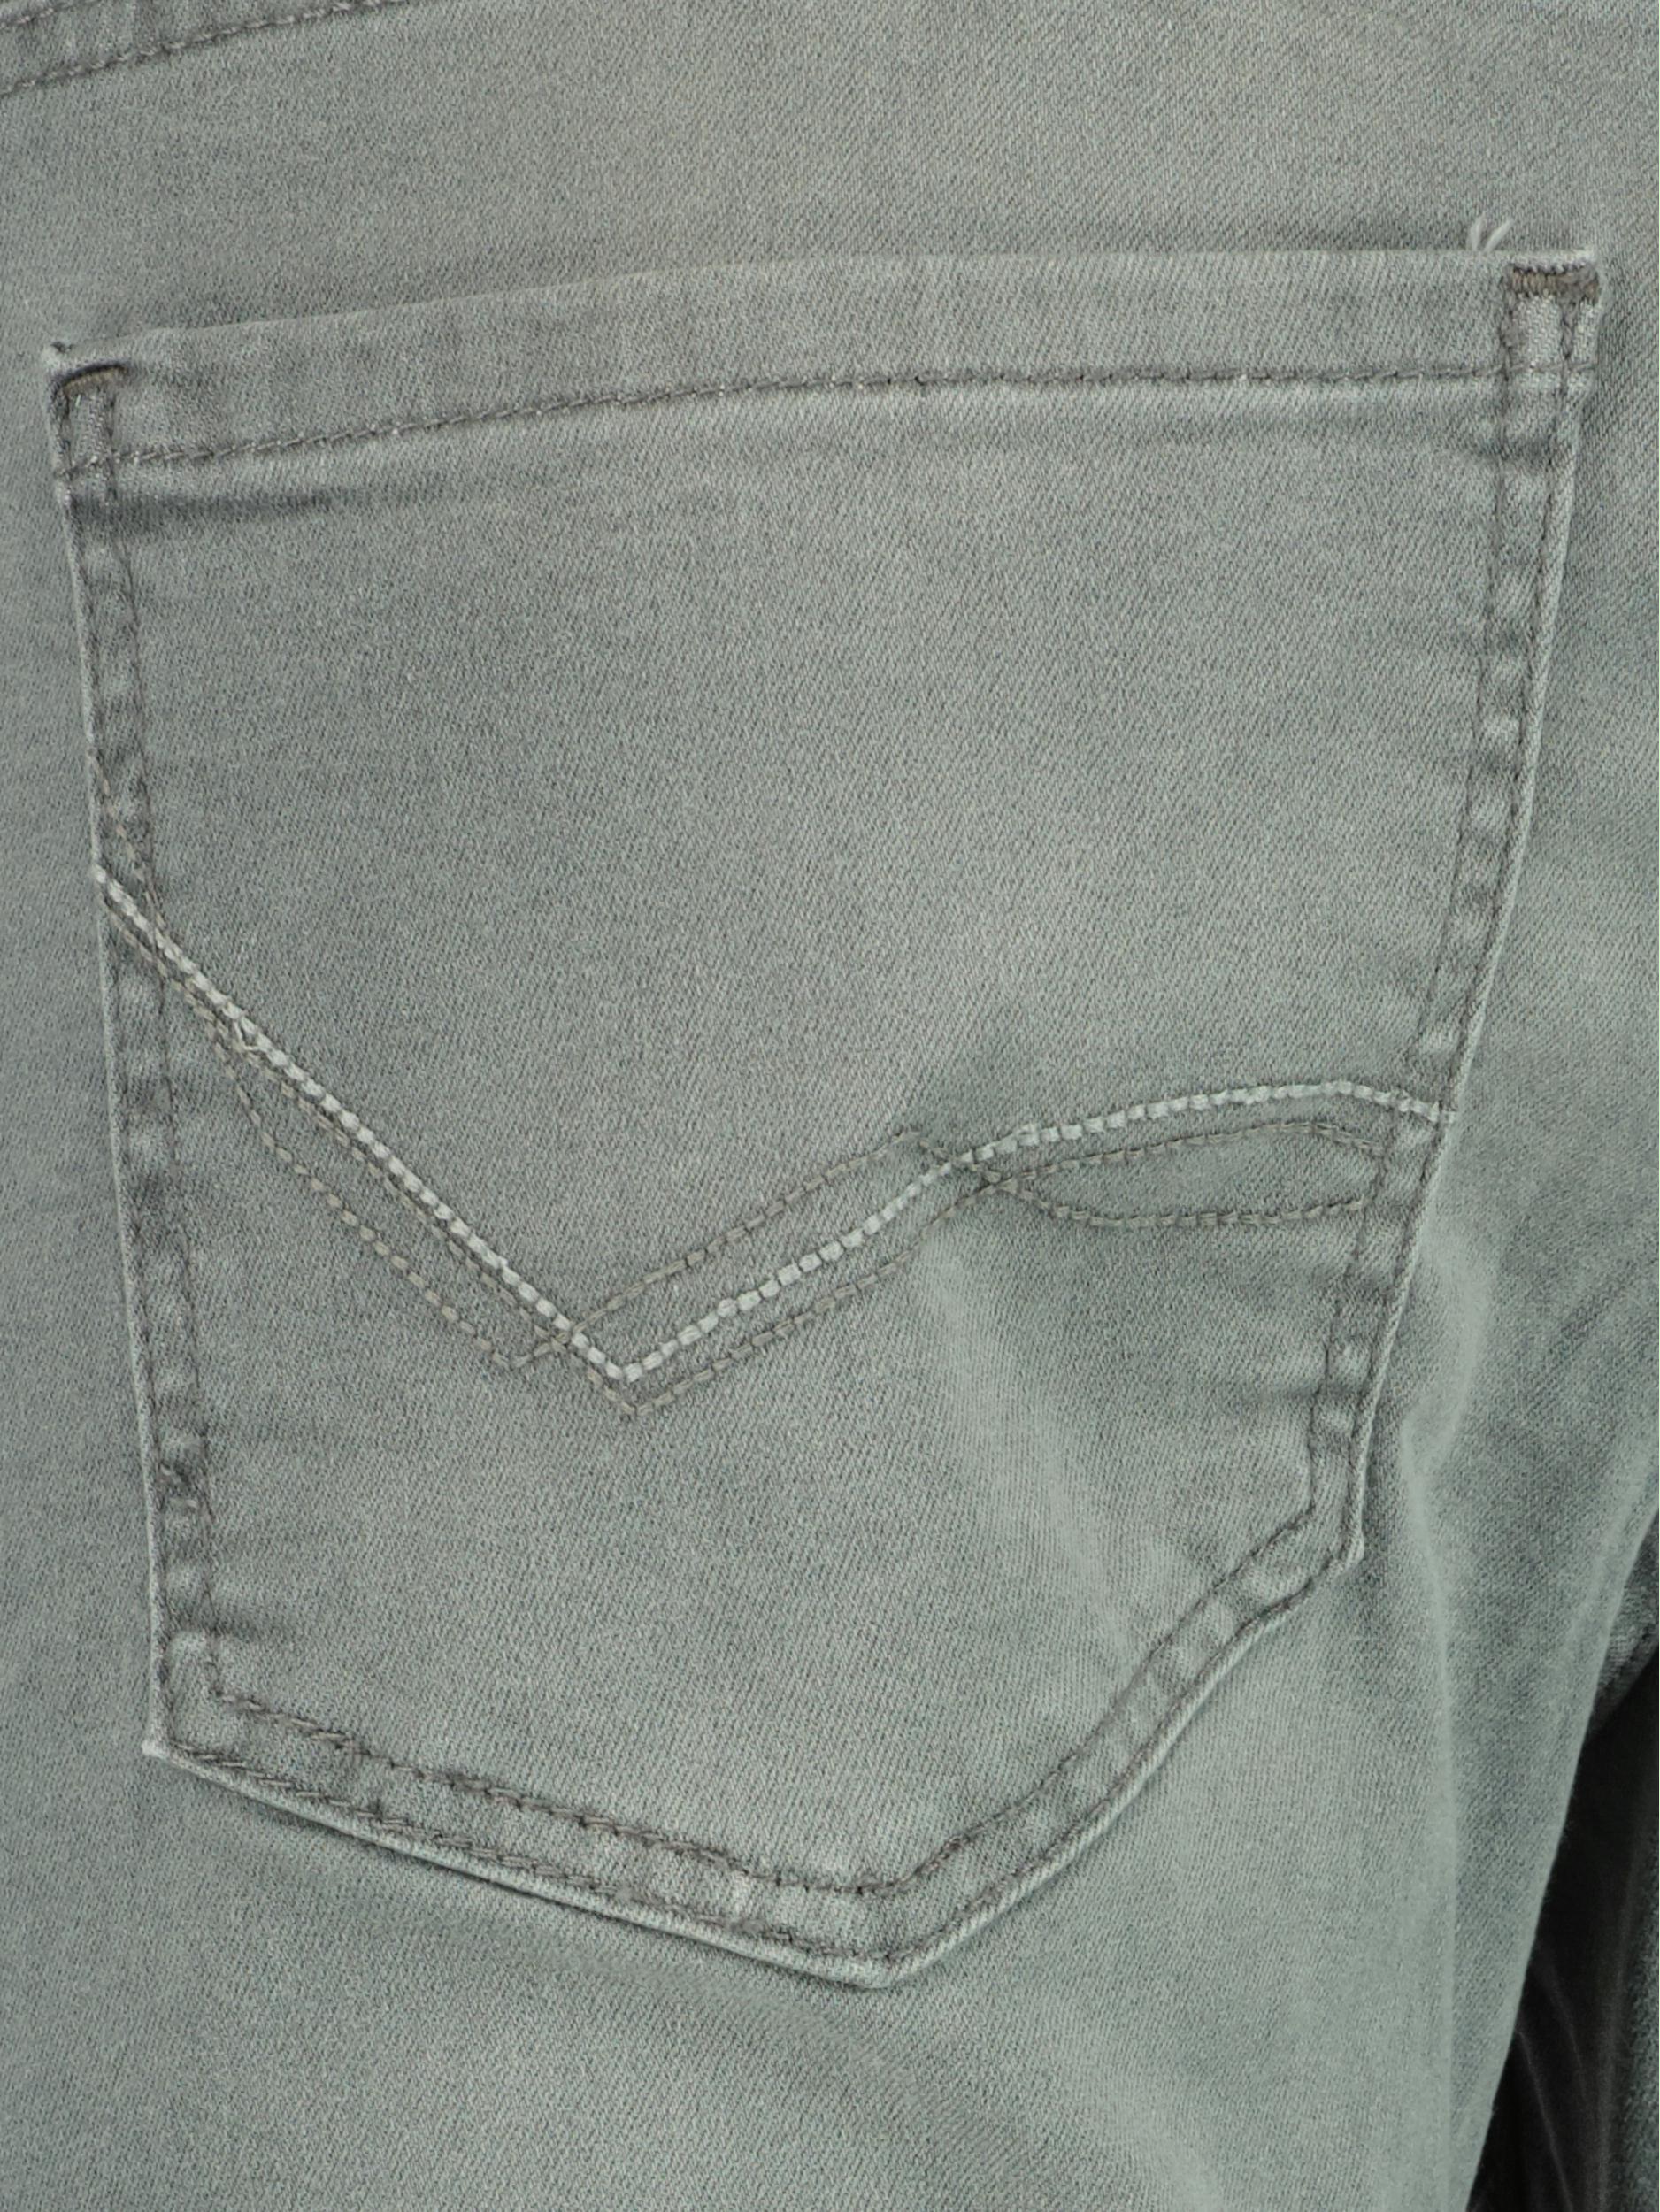 Blue Game 5-Pocket Jeans Grijs  9002/Light Grey